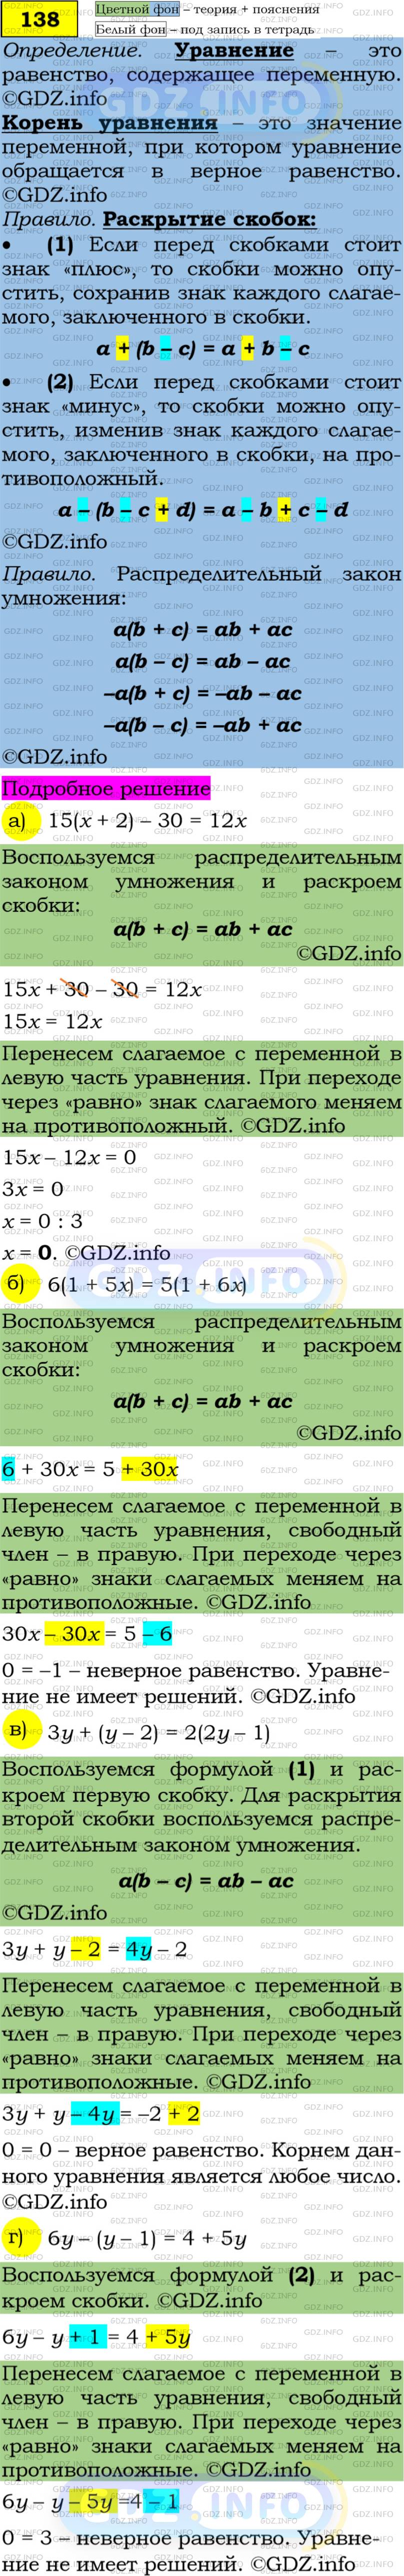 Фото решения 4: Номер задания №138 из ГДЗ по Алгебре 7 класс: Макарычев Ю.Н. г.